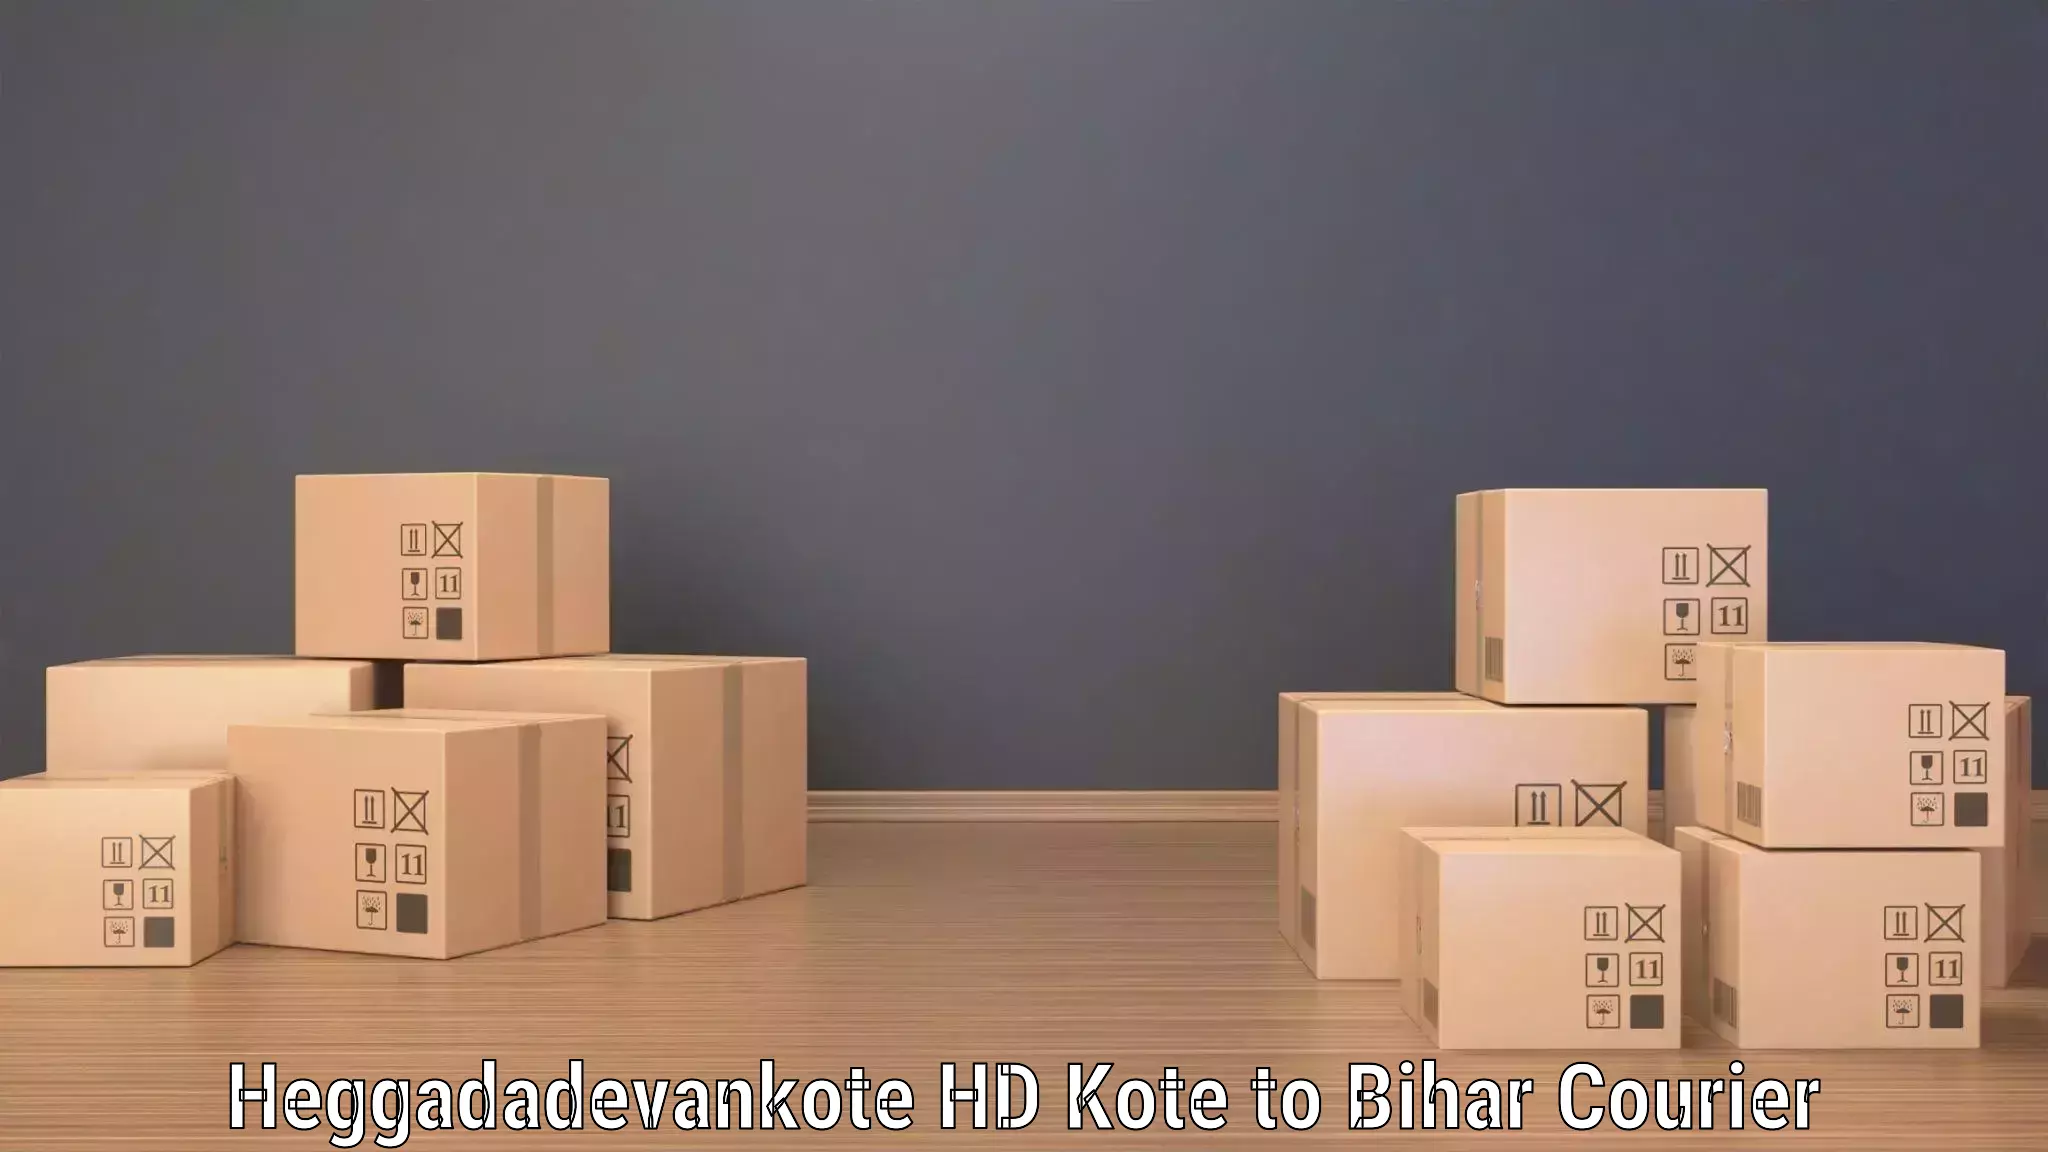 Global parcel delivery Heggadadevankote HD Kote to Tekari